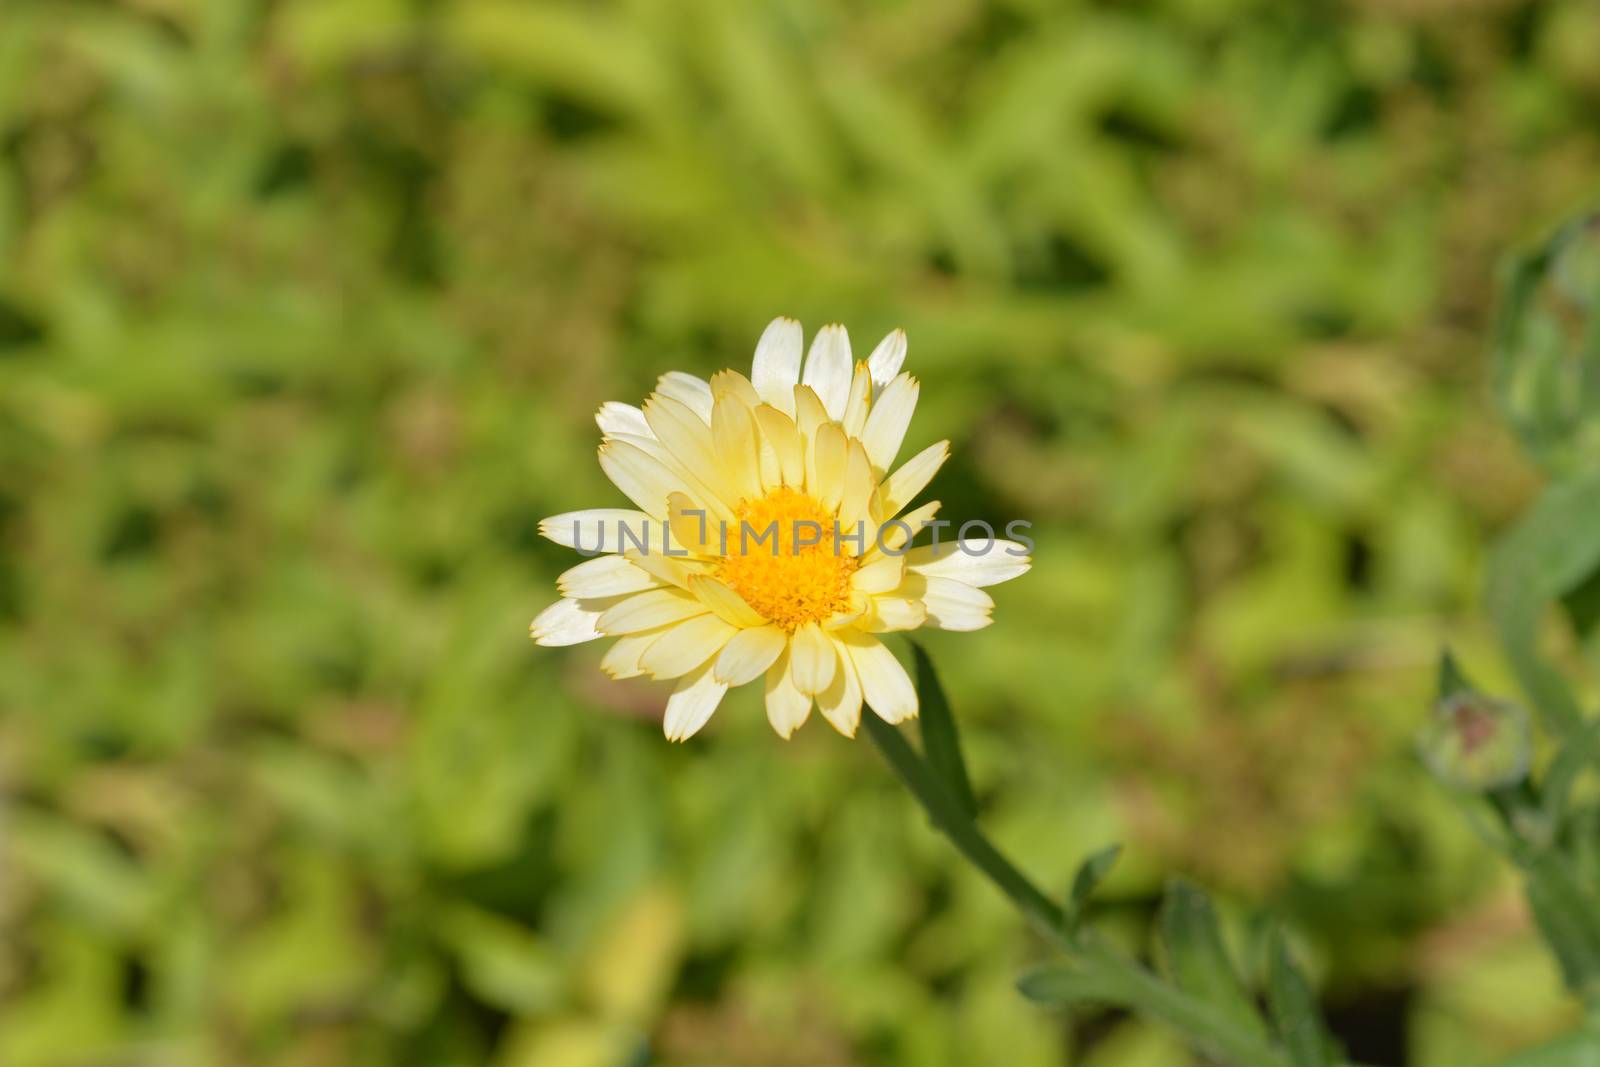 Garden marigold by nahhan